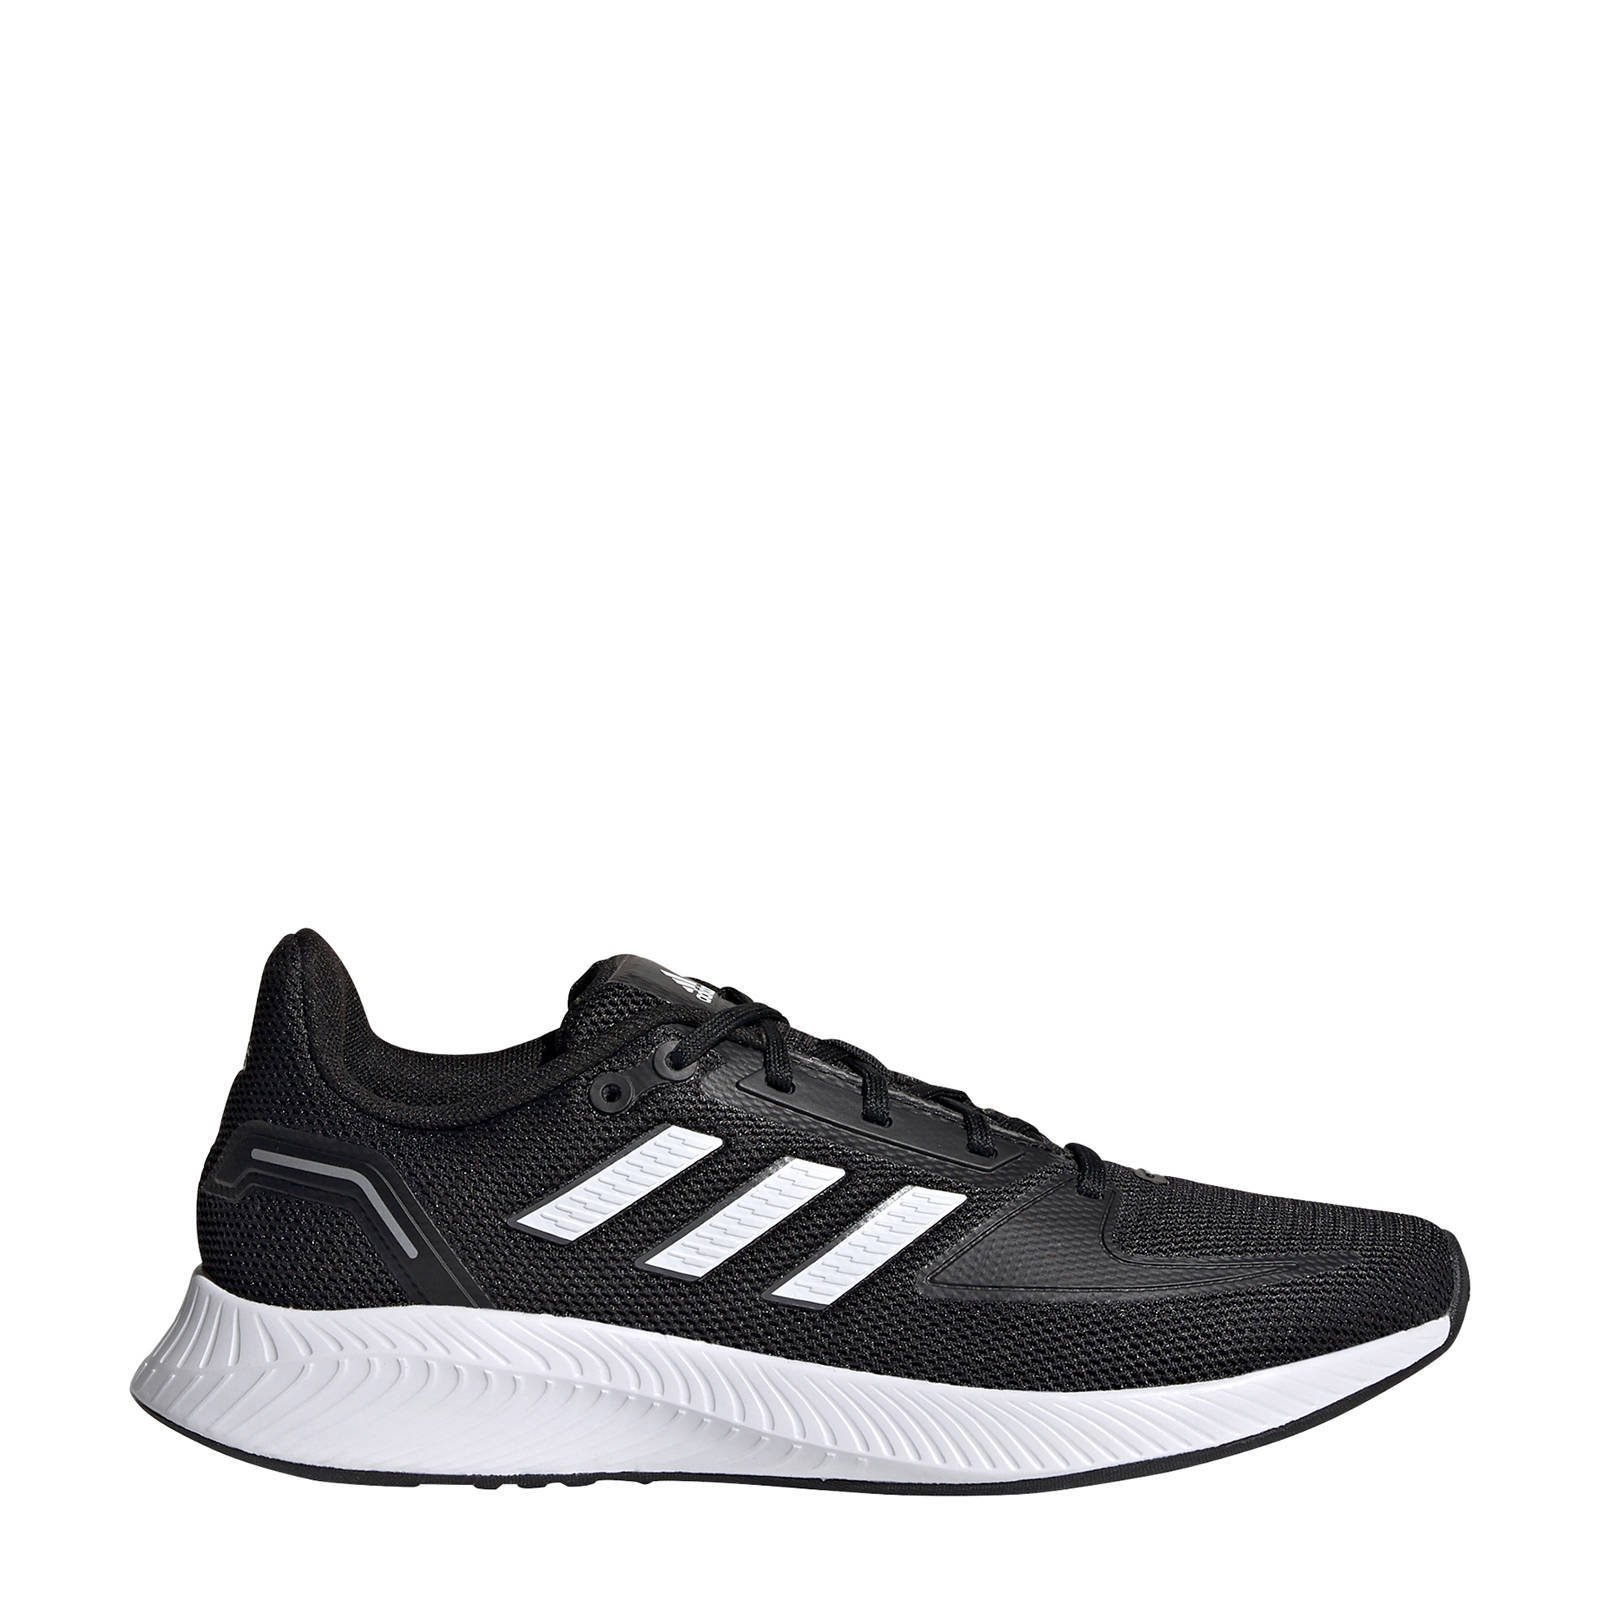 Adidas Performance Runfalcon 2.0 hardloopschoenen zwart/wit/grijs online kopen